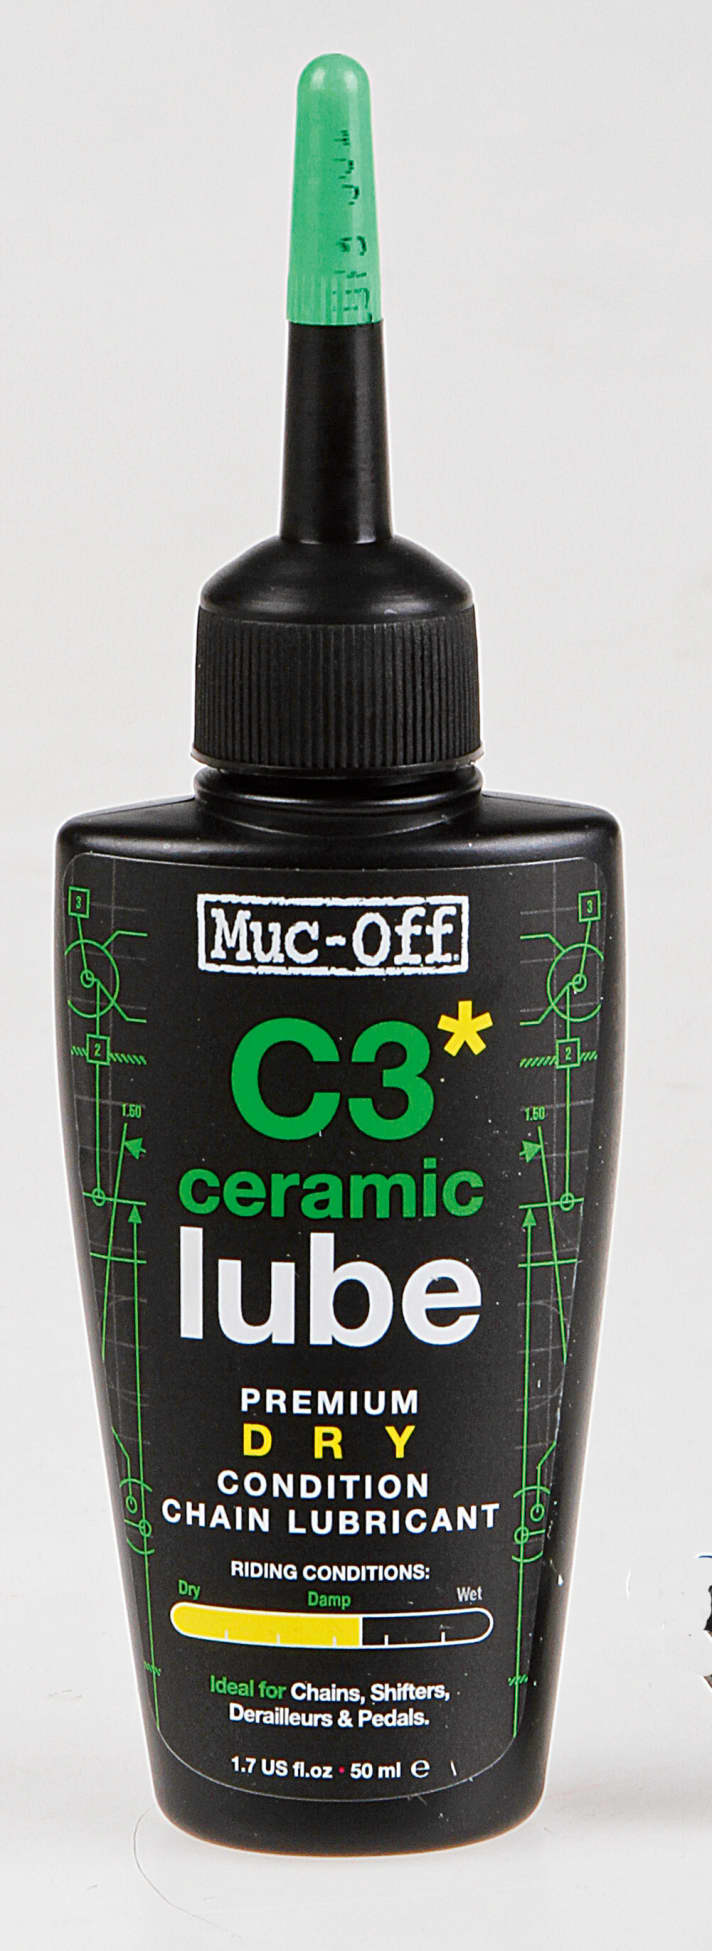   Muc-Off C3 Ceramic Lube